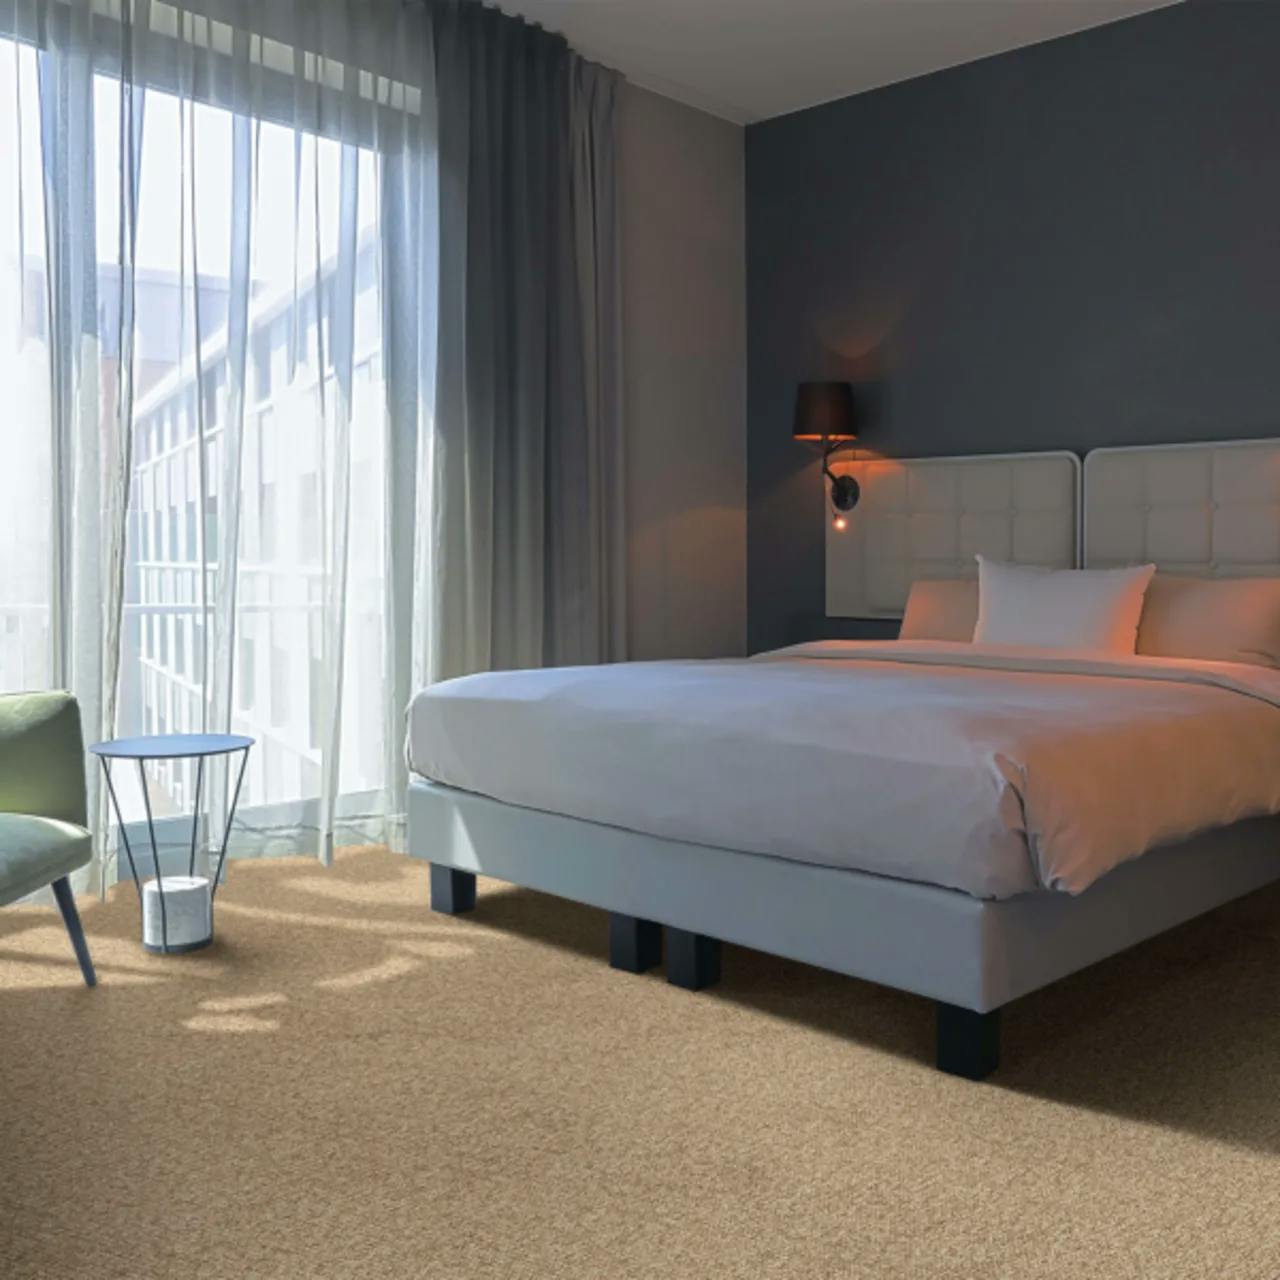 Medina Cedar carpet installed wall-to-wall in chic hotel bedroom